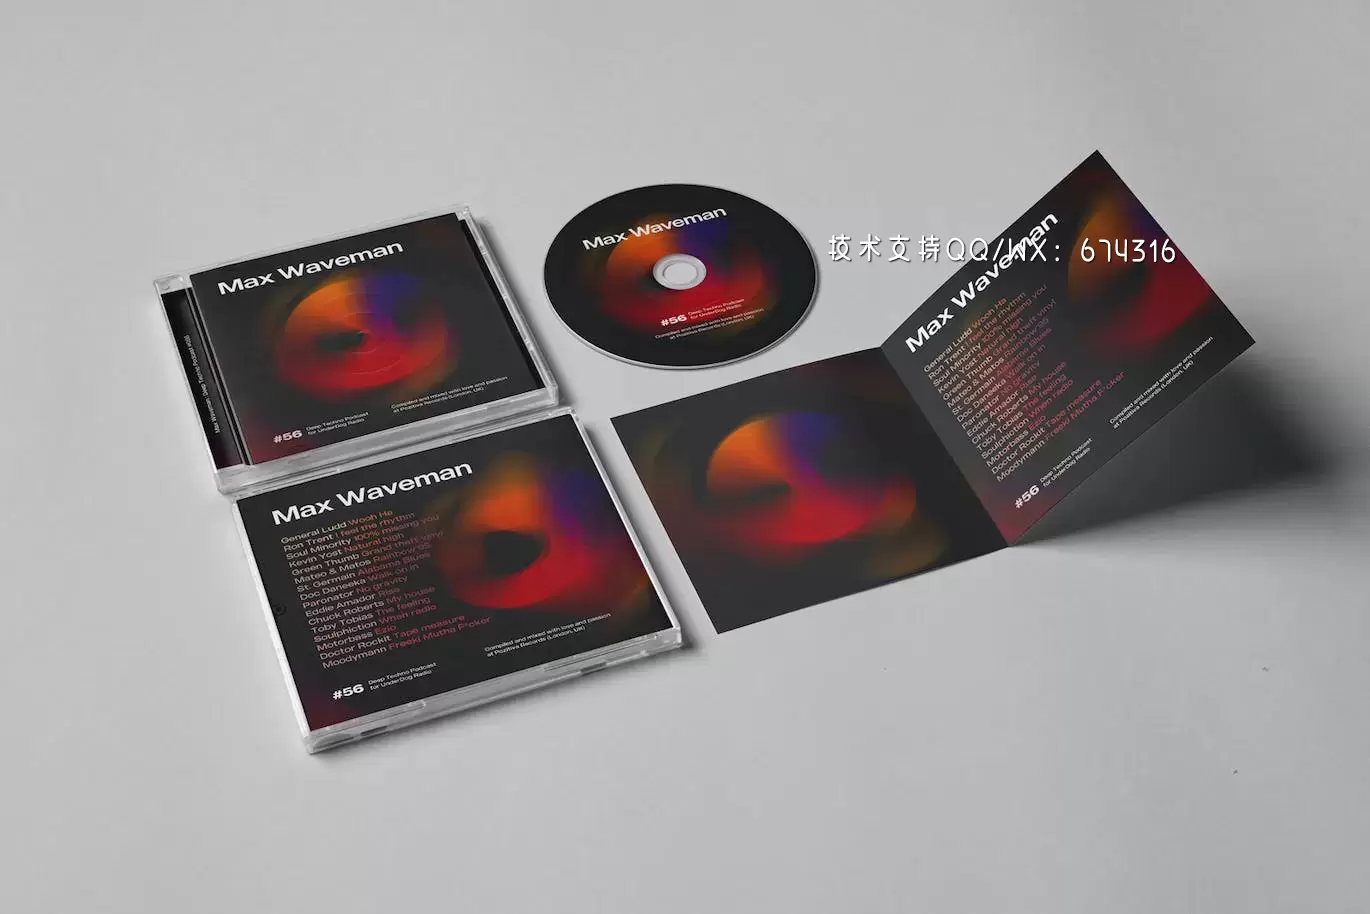 时尚高端DJ CD光盘光碟包装设计VI样机展示模型mockups免费下载插图1